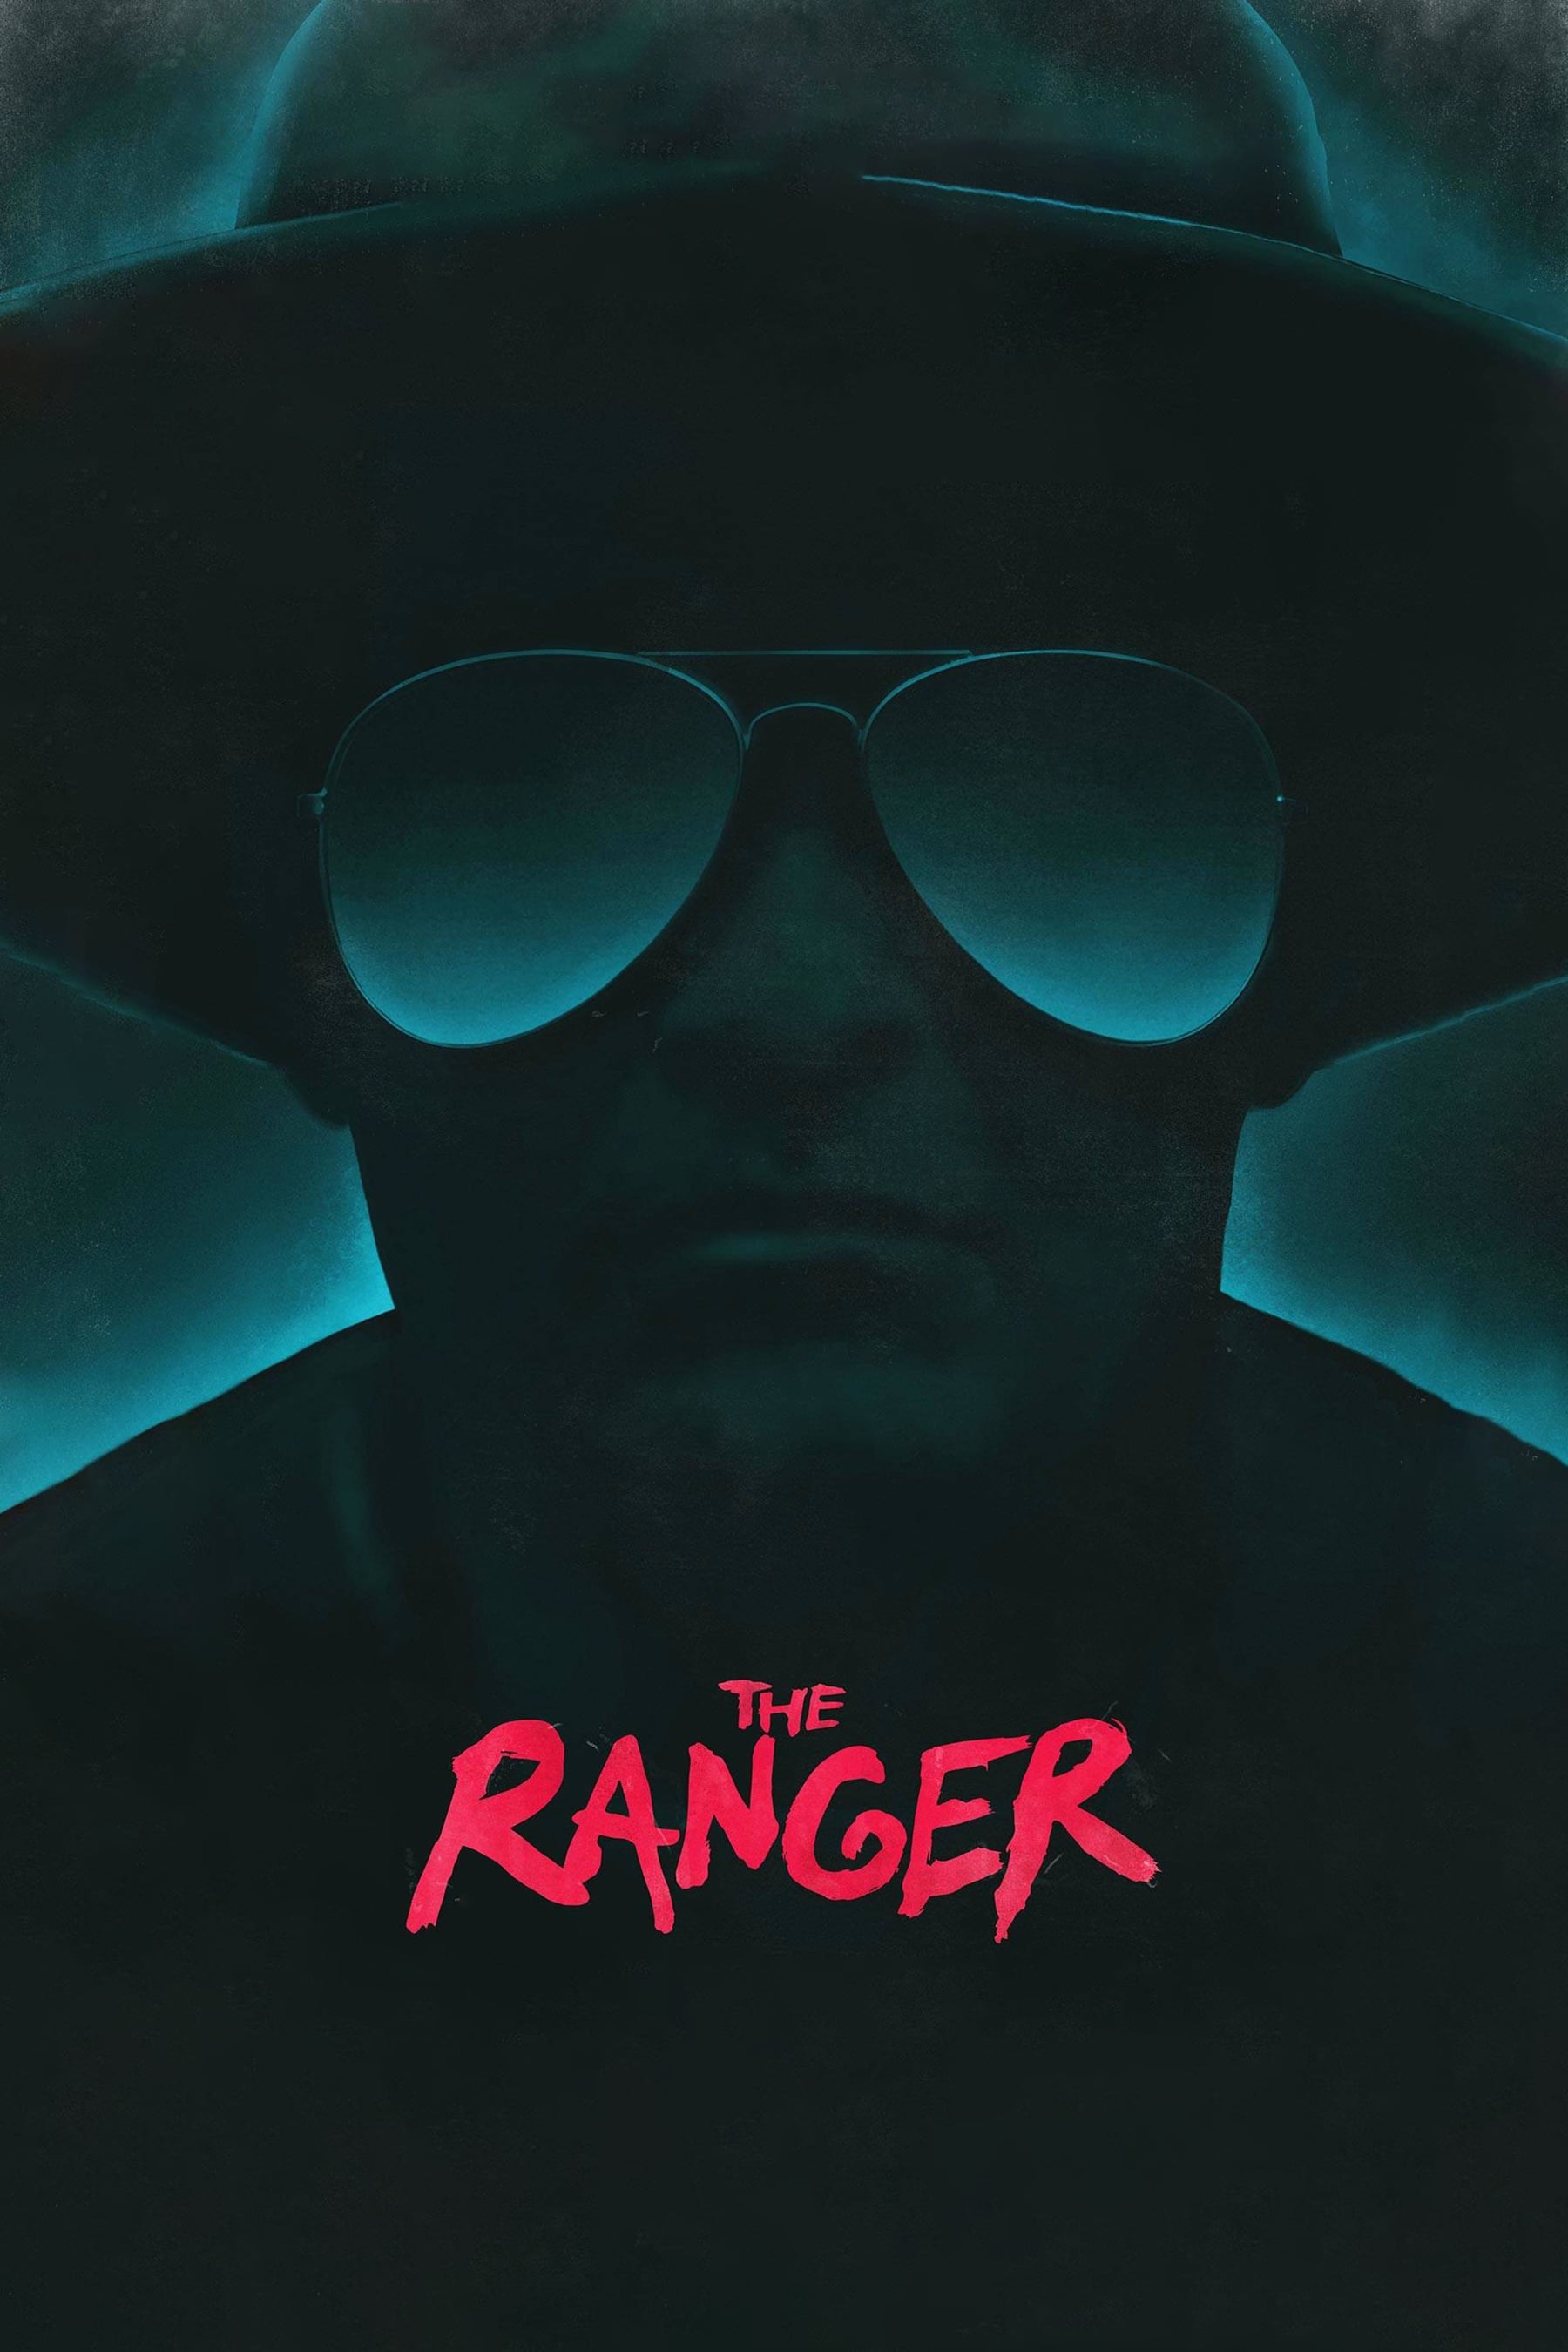 The Ranger film